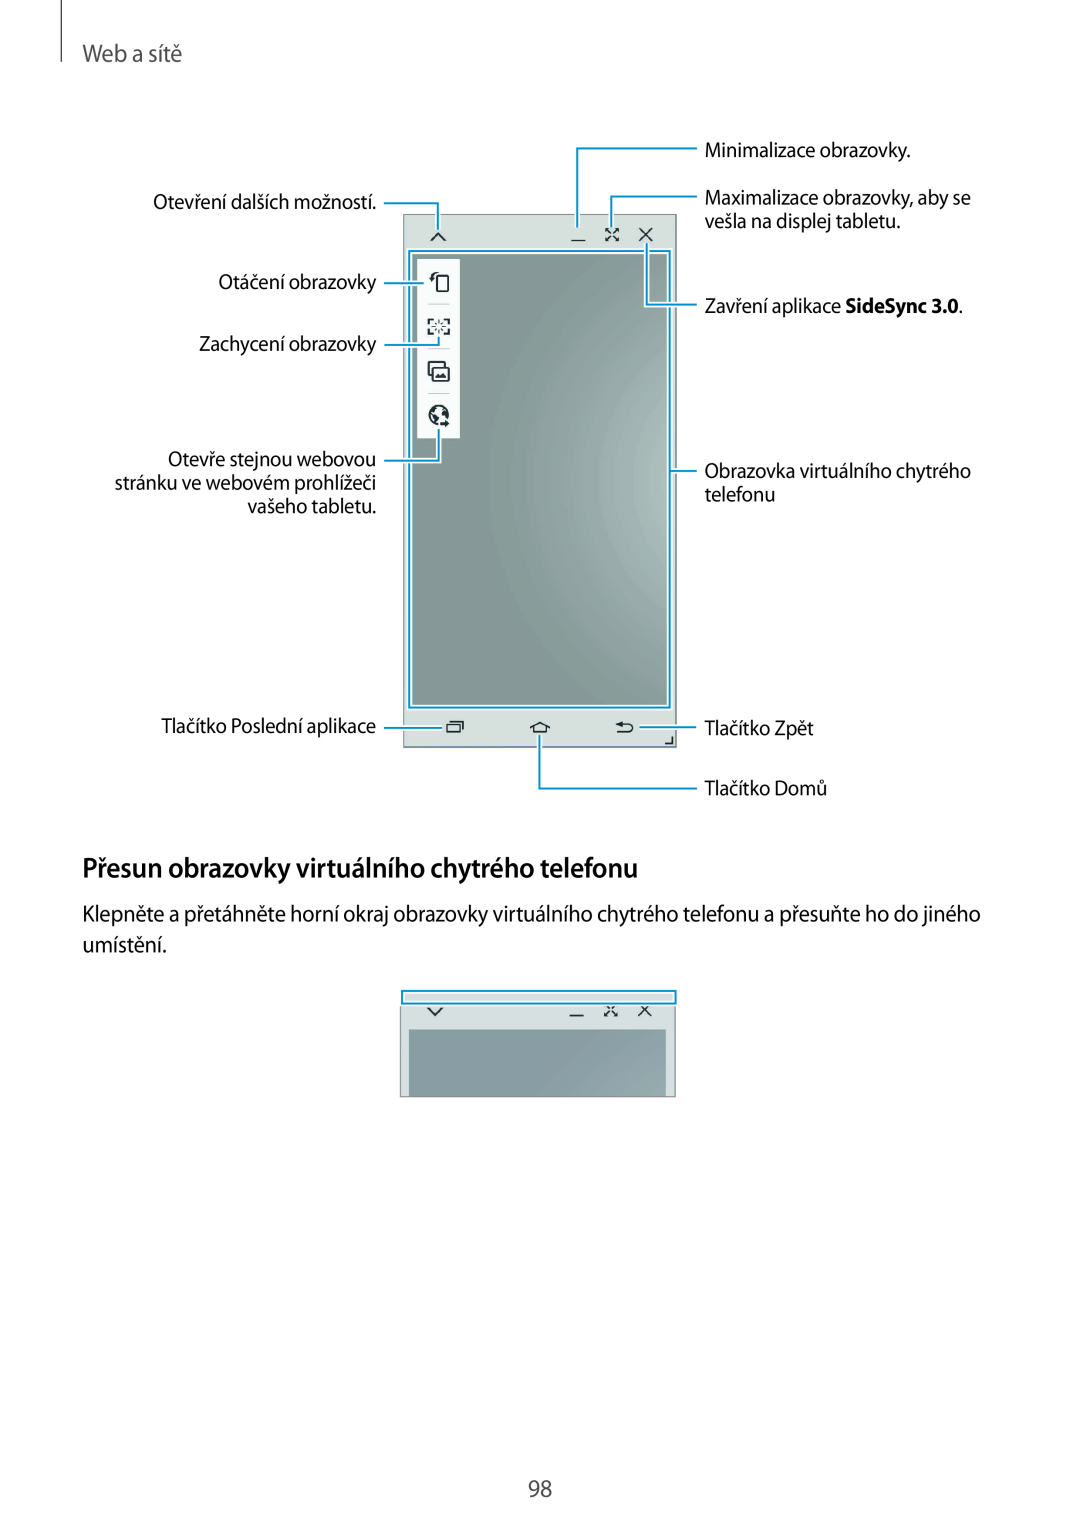 Samsung SM-P9050ZWAEUR, SM-P9050ZWAATO, SM-P9050ZKAATO manual Přesun obrazovky virtuálního chytrého telefonu, Web a sítě 